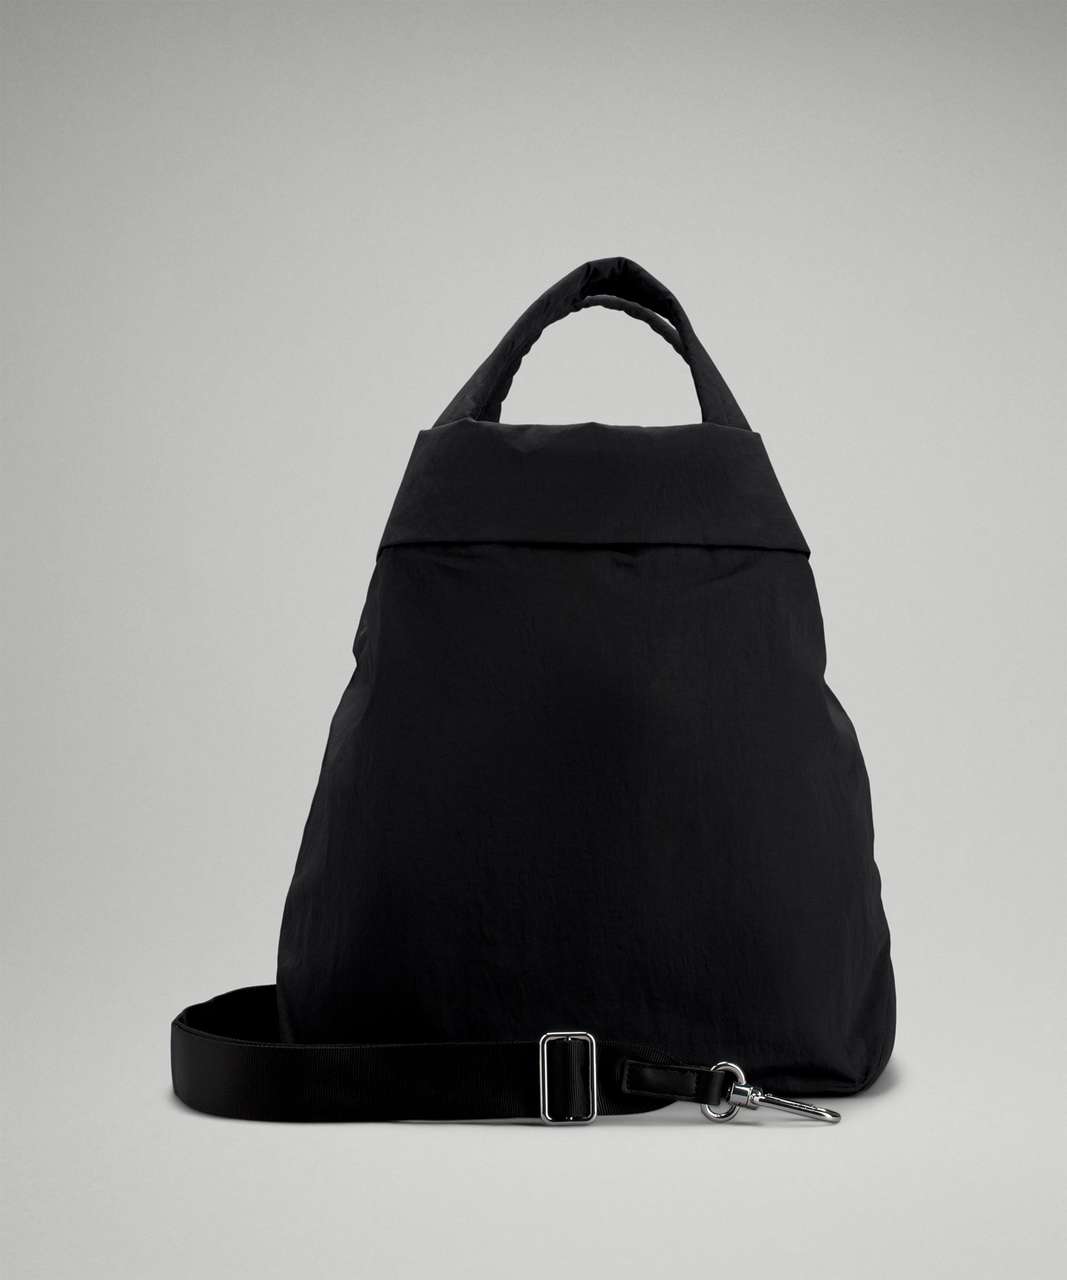 Lululemon On My Level Bag 2.0 19L - Black (Second Release)